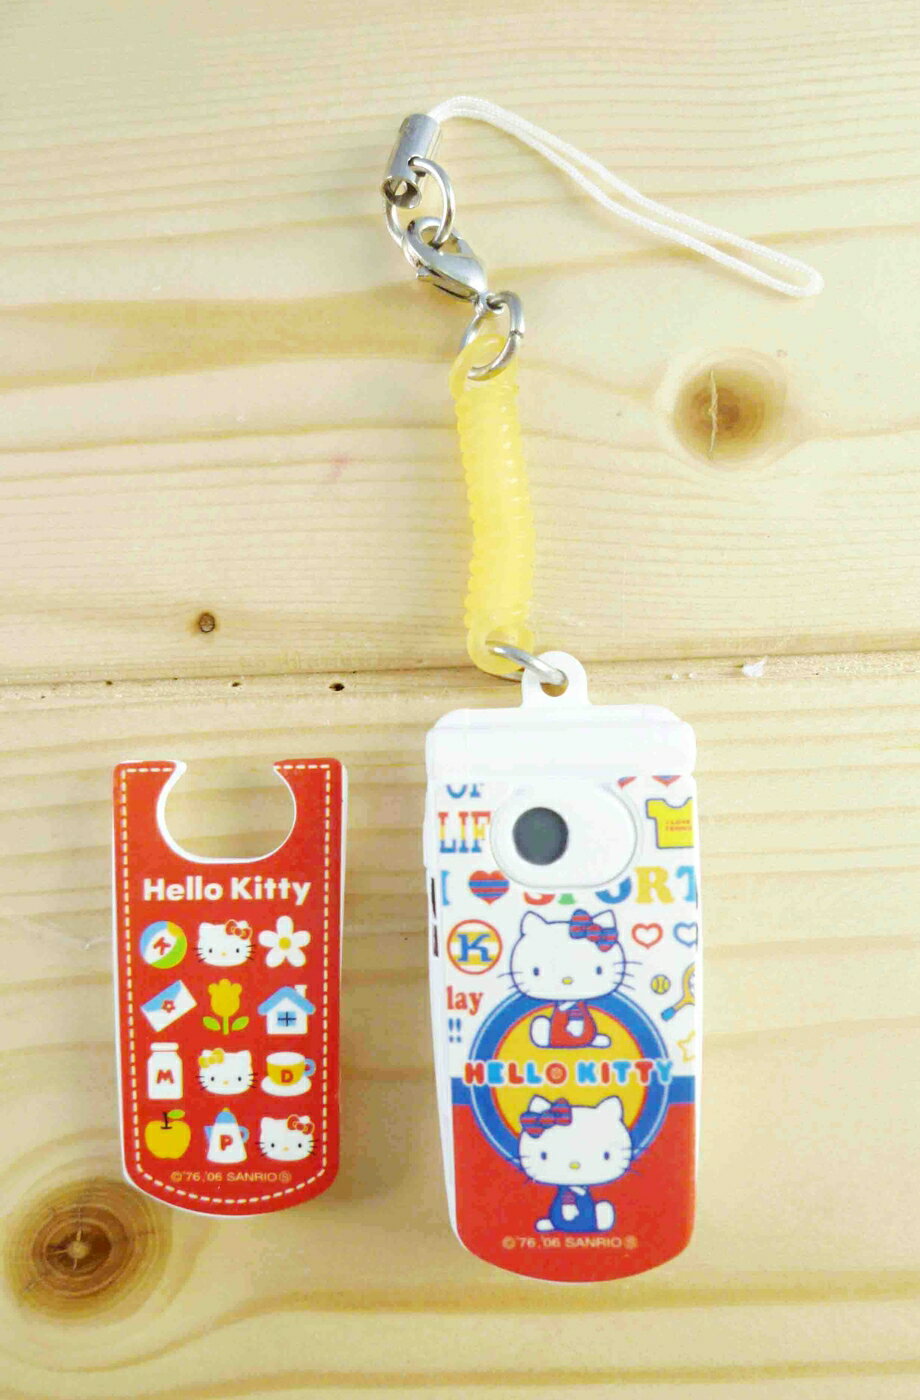 【震撼精品百貨】Hello Kitty 凱蒂貓 可換殼手機吊飾-紅白手機 震撼日式精品百貨